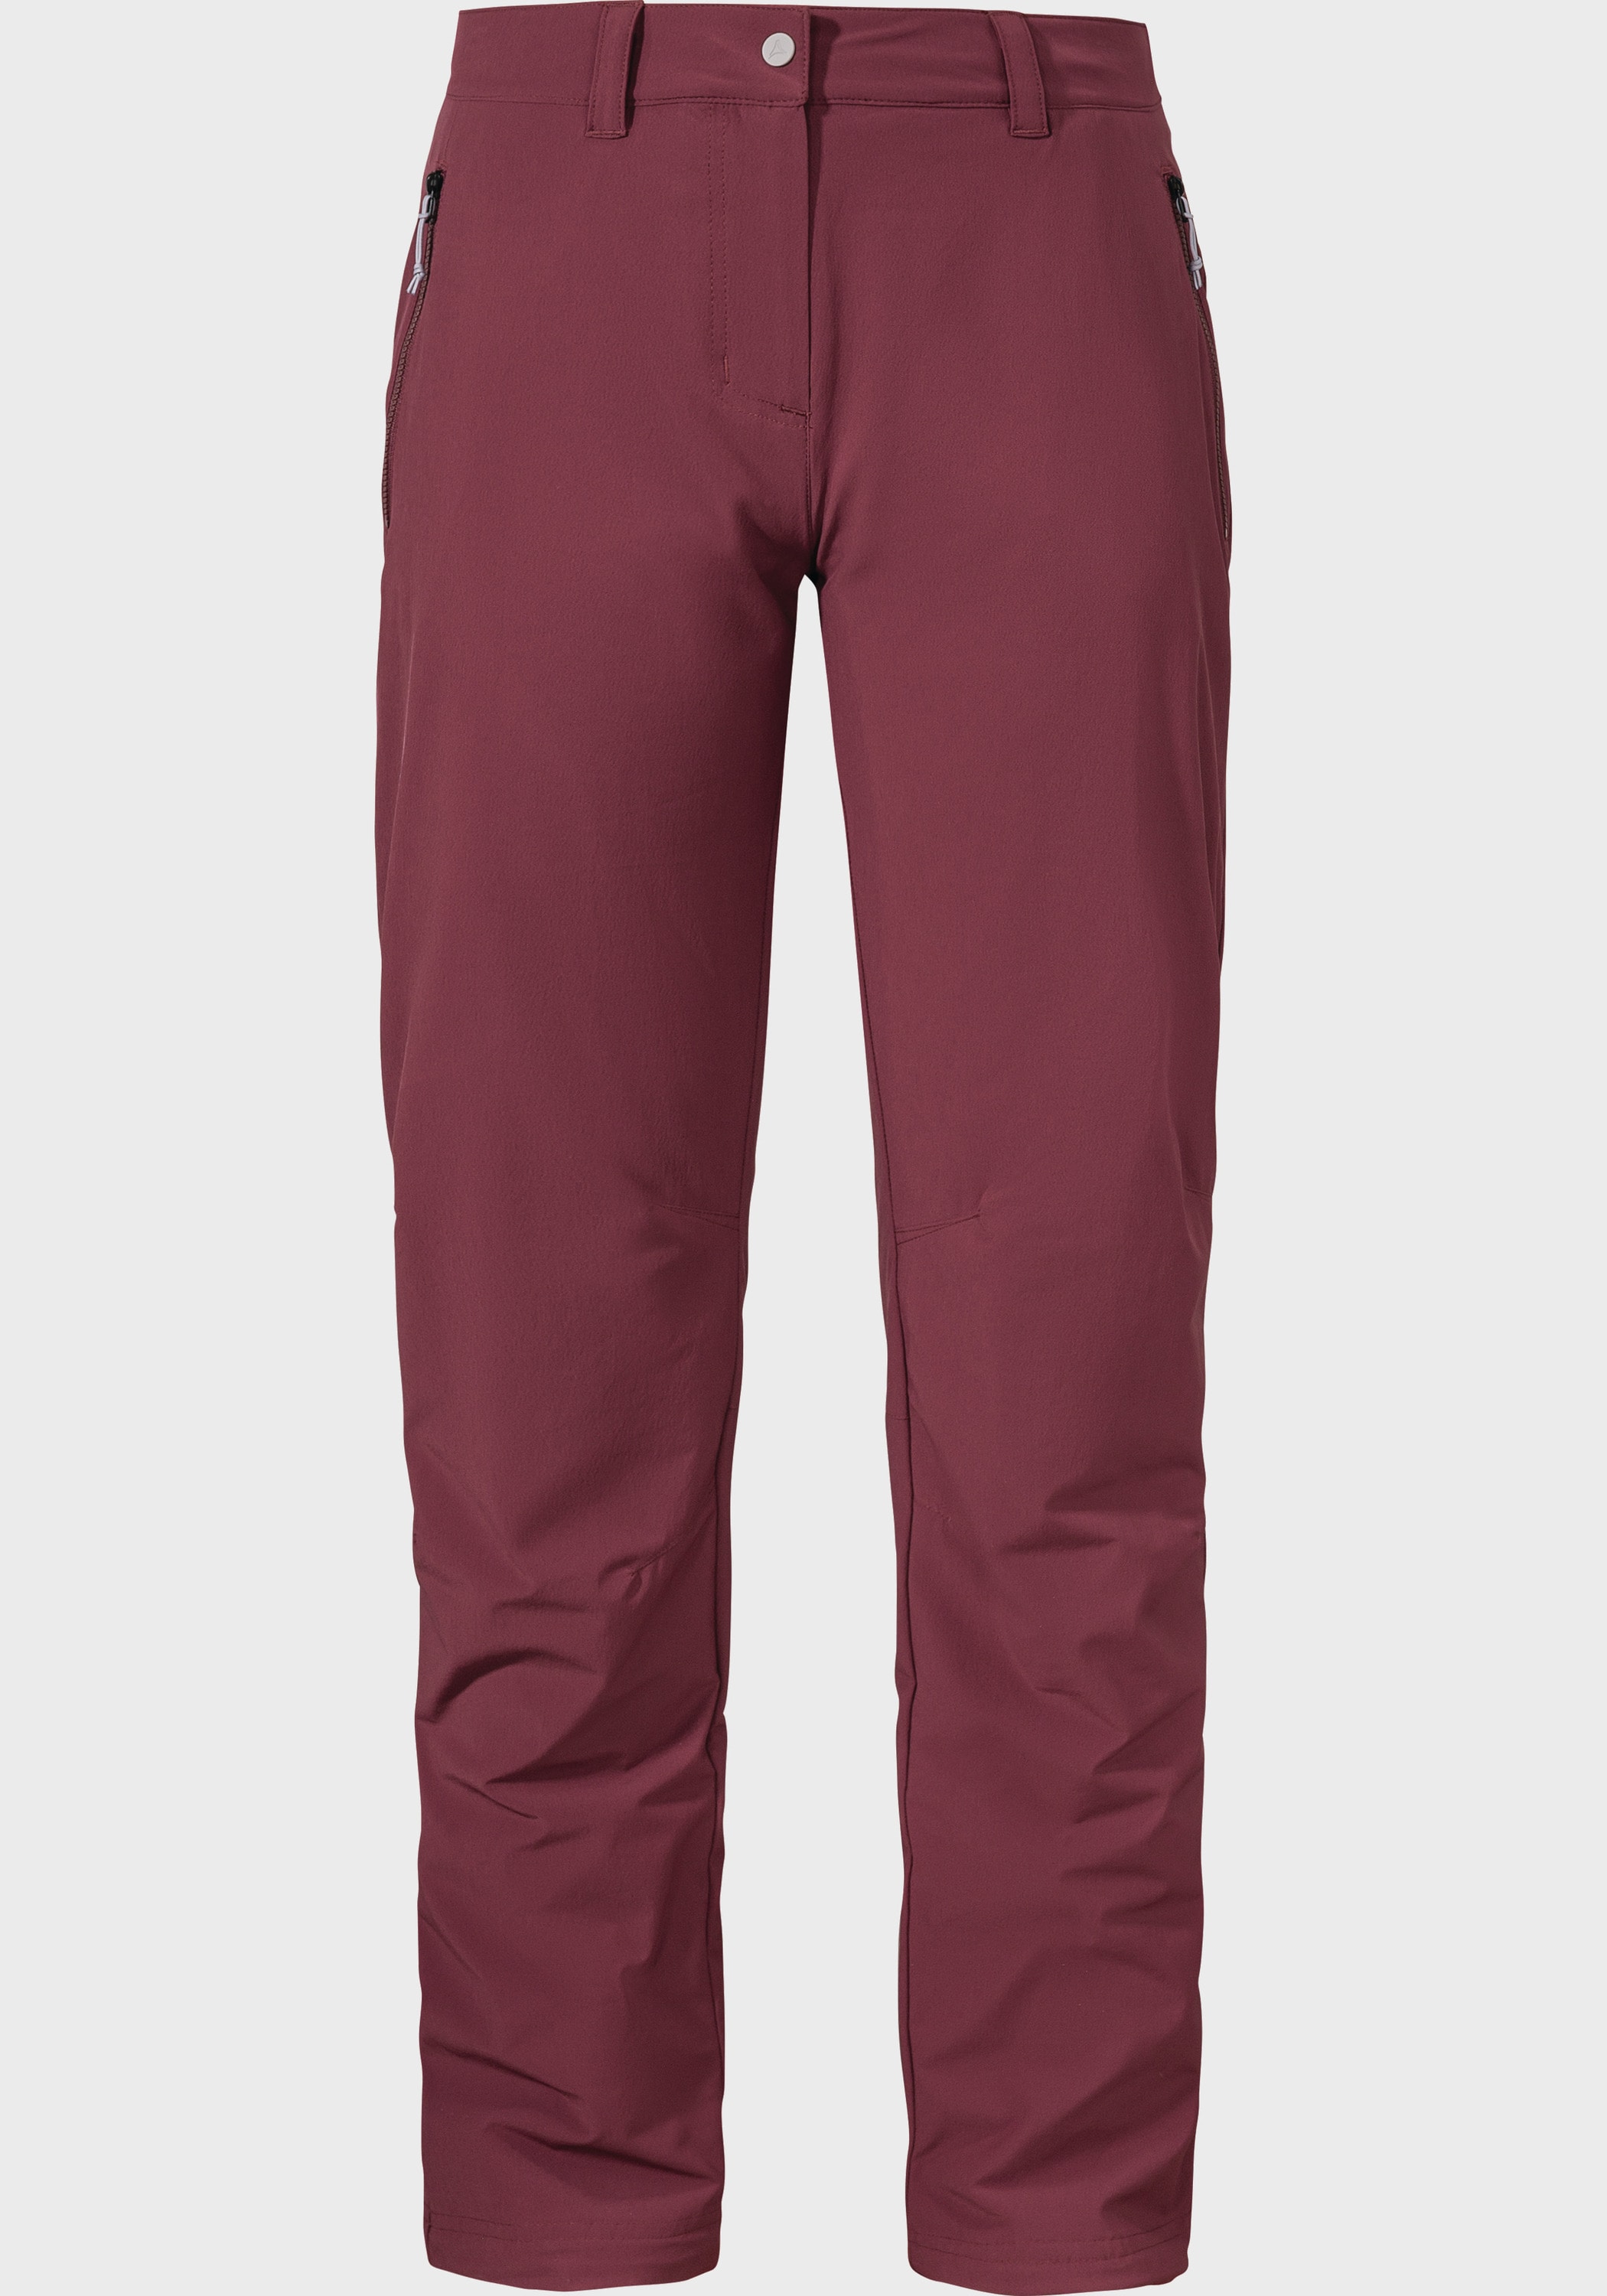 Schöffel Outdoorhose »Pants Engadin1 L« Warm shoppen